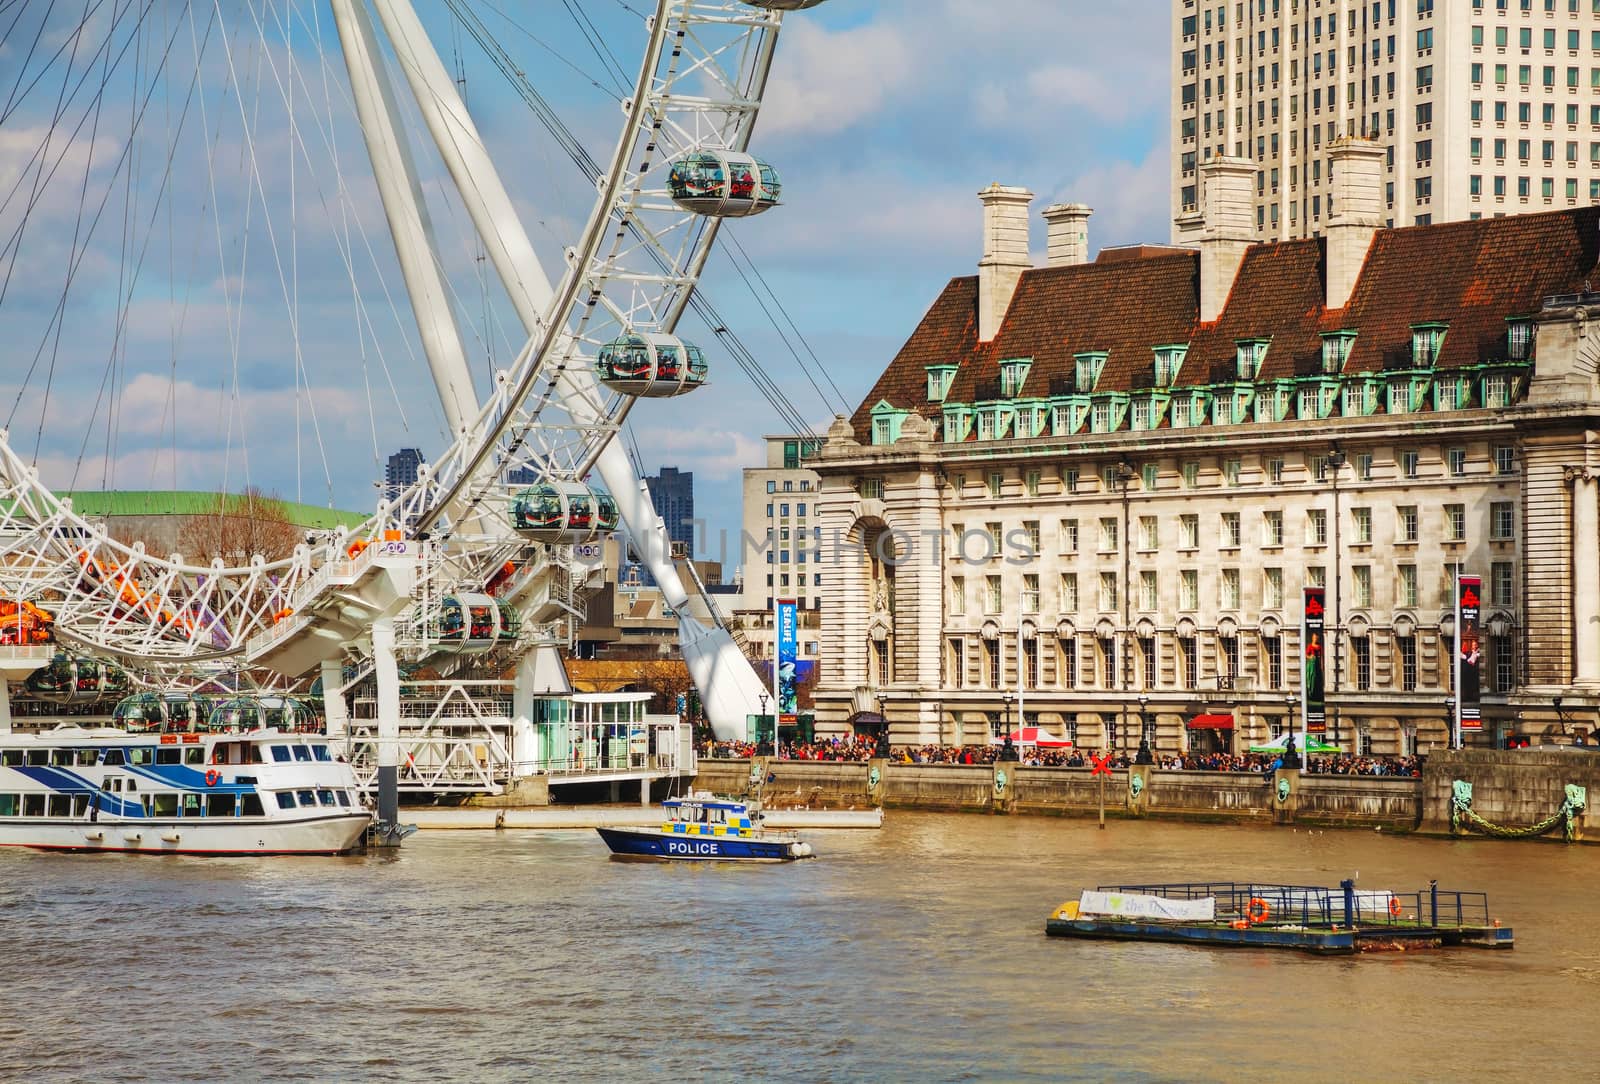 The London Eye Ferris wheel in London, UK by AndreyKr